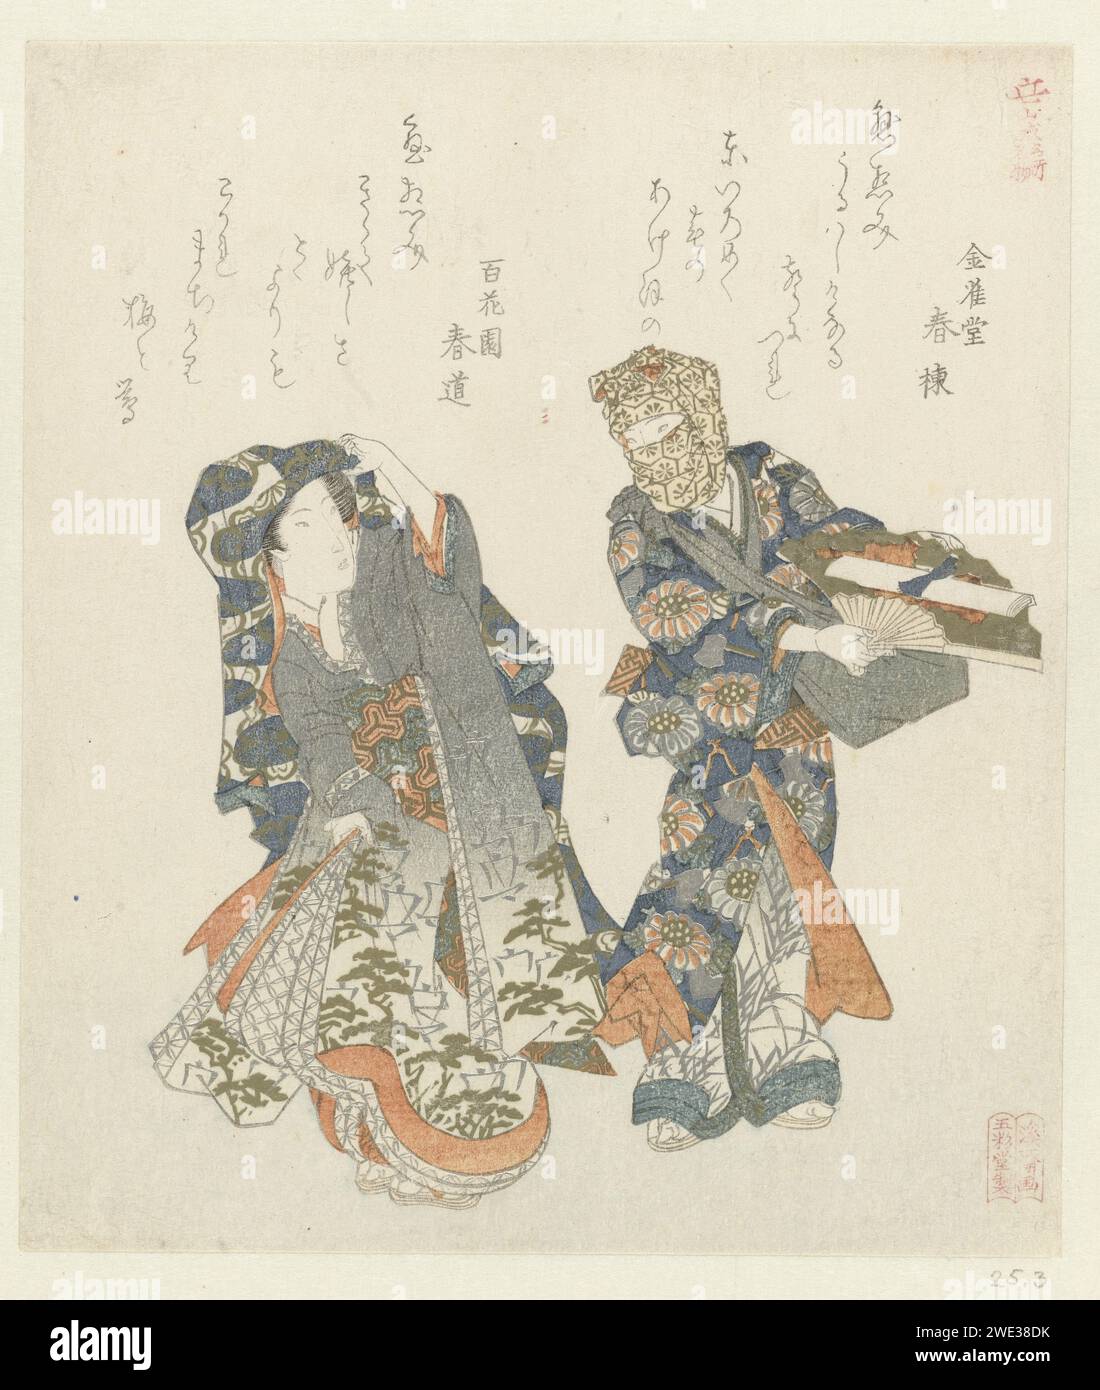 Une femme se tourne vers un homme, Keisai exige, c. 1815 - c. 1820 Une femme regarde un homme qui tient un éventail devant lui, sur lequel repose une lettre. Les deux poèmes de cette estampe parlent de lettres d'amour (Kesôbumi) vendues au début de la nouvelle année. L'homme est probablement un vendeur de ce genre de lettres d'amour. Depuis que ces vendeurs étaient paria, il a couvert la plupart de son visage. La femme est probablement d'une grande classe et porte un kimono spécial qui peut couvrir son visage comme un voile. Papier de couleur Japon gravé sur bois Banque D'Images